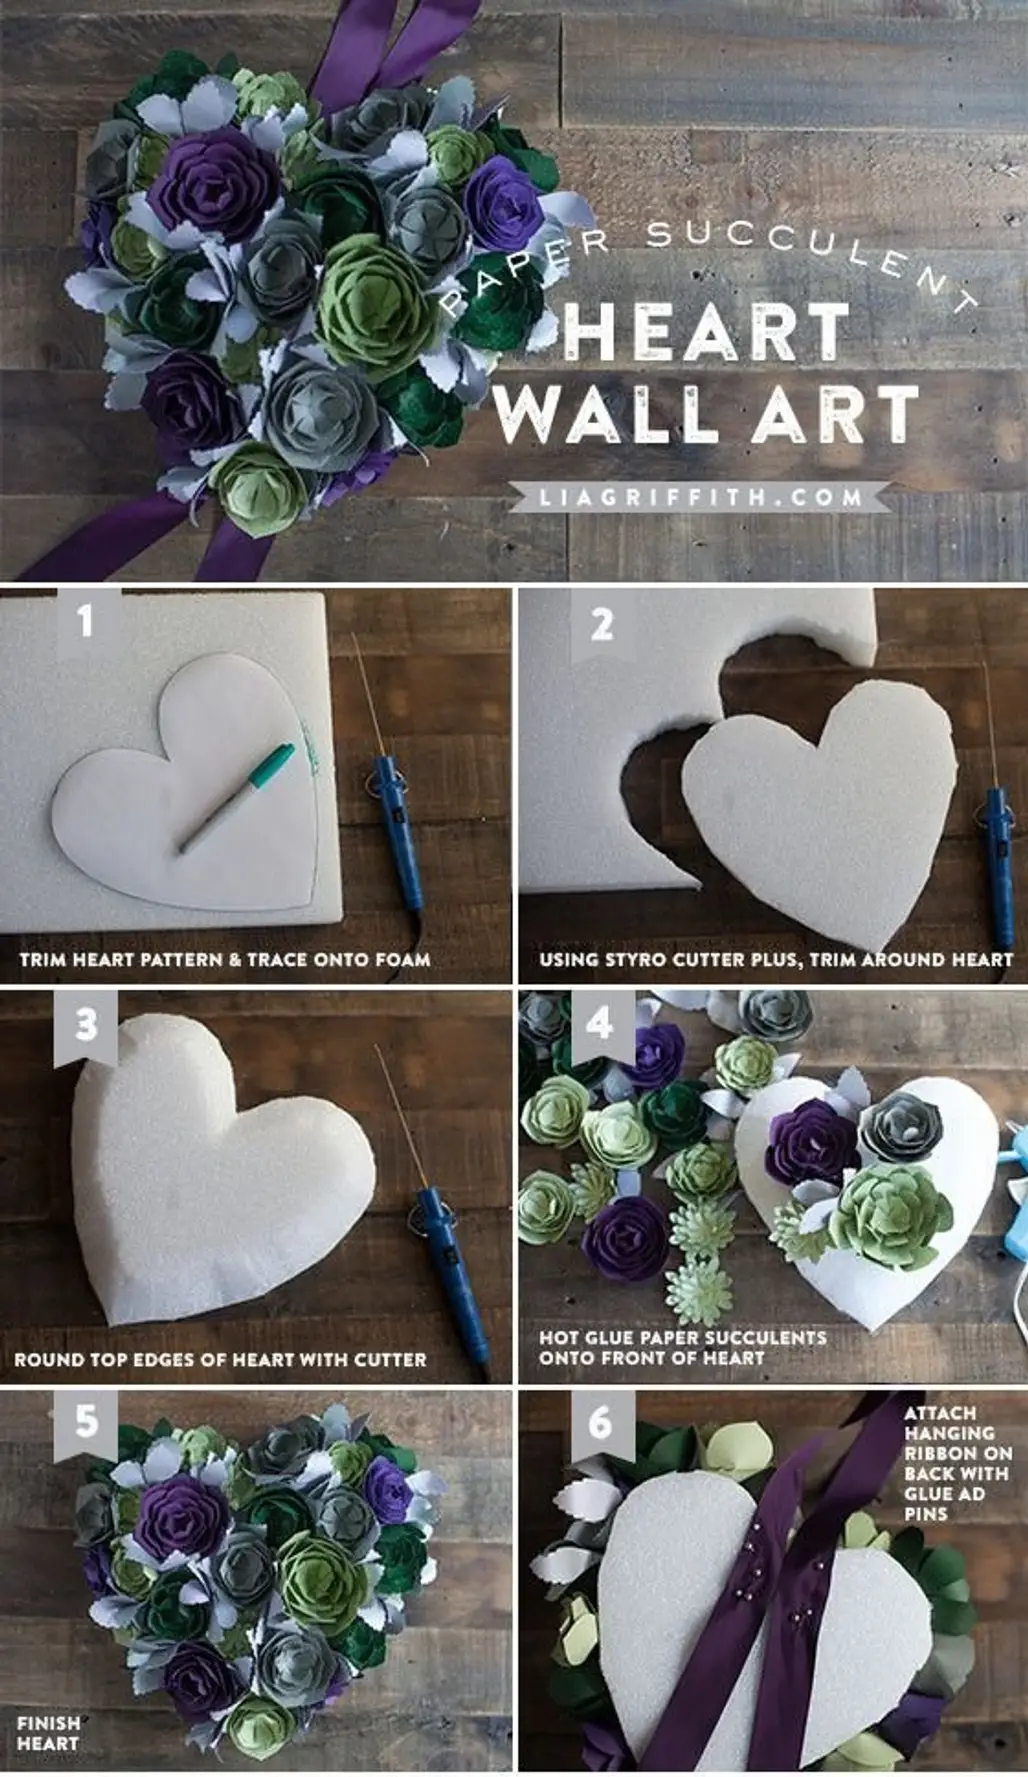 Paper Succulent Heart Wall Art